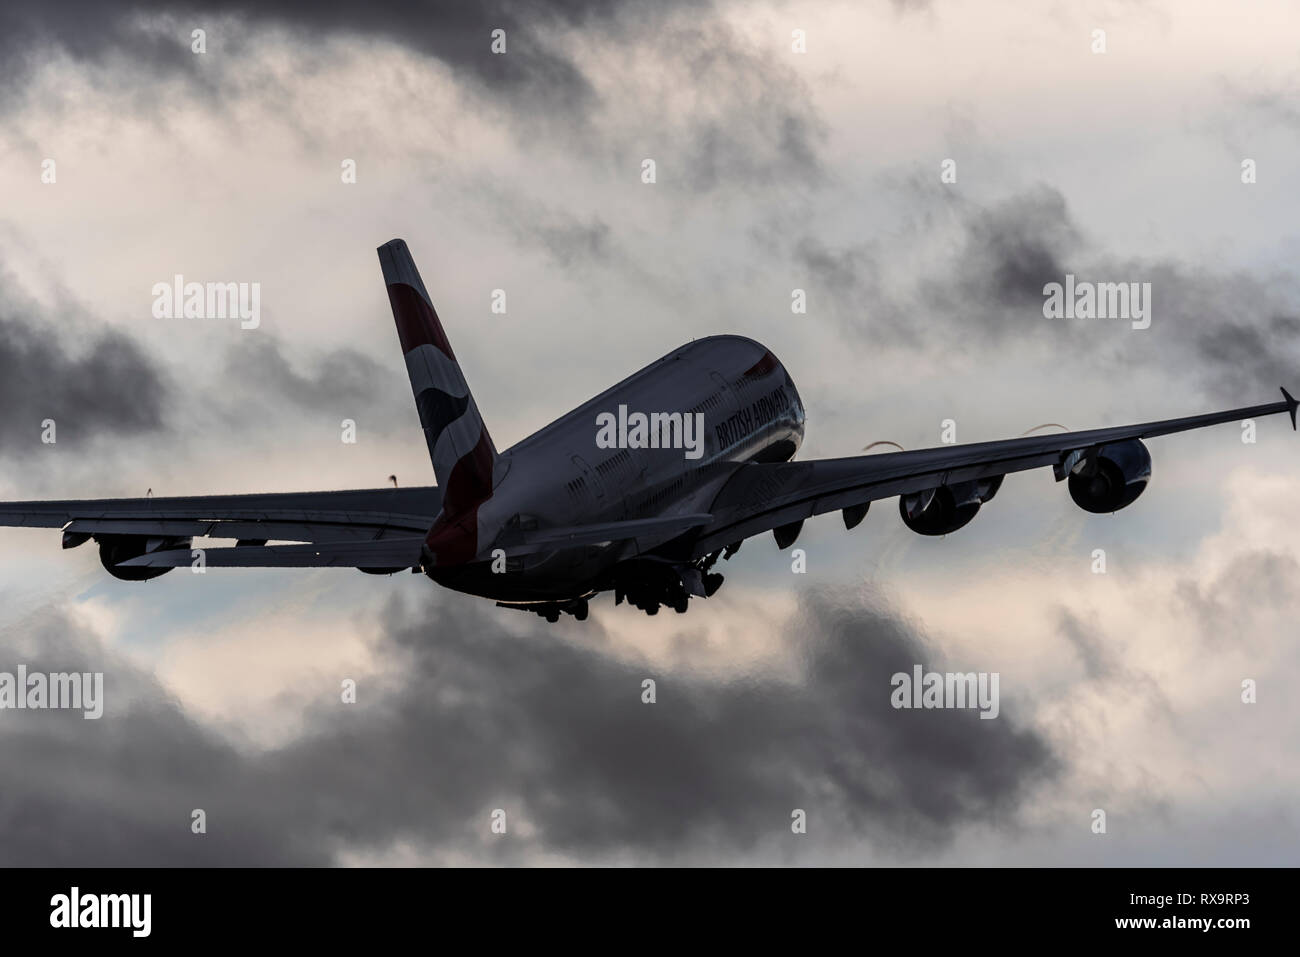 British Airways A380 Superjumbo-Jet-Flugzeug startet vom Flughafen London Heathrow bei schlechtem Wetter. Dunkle Regenwolken am Himmel Stockfoto